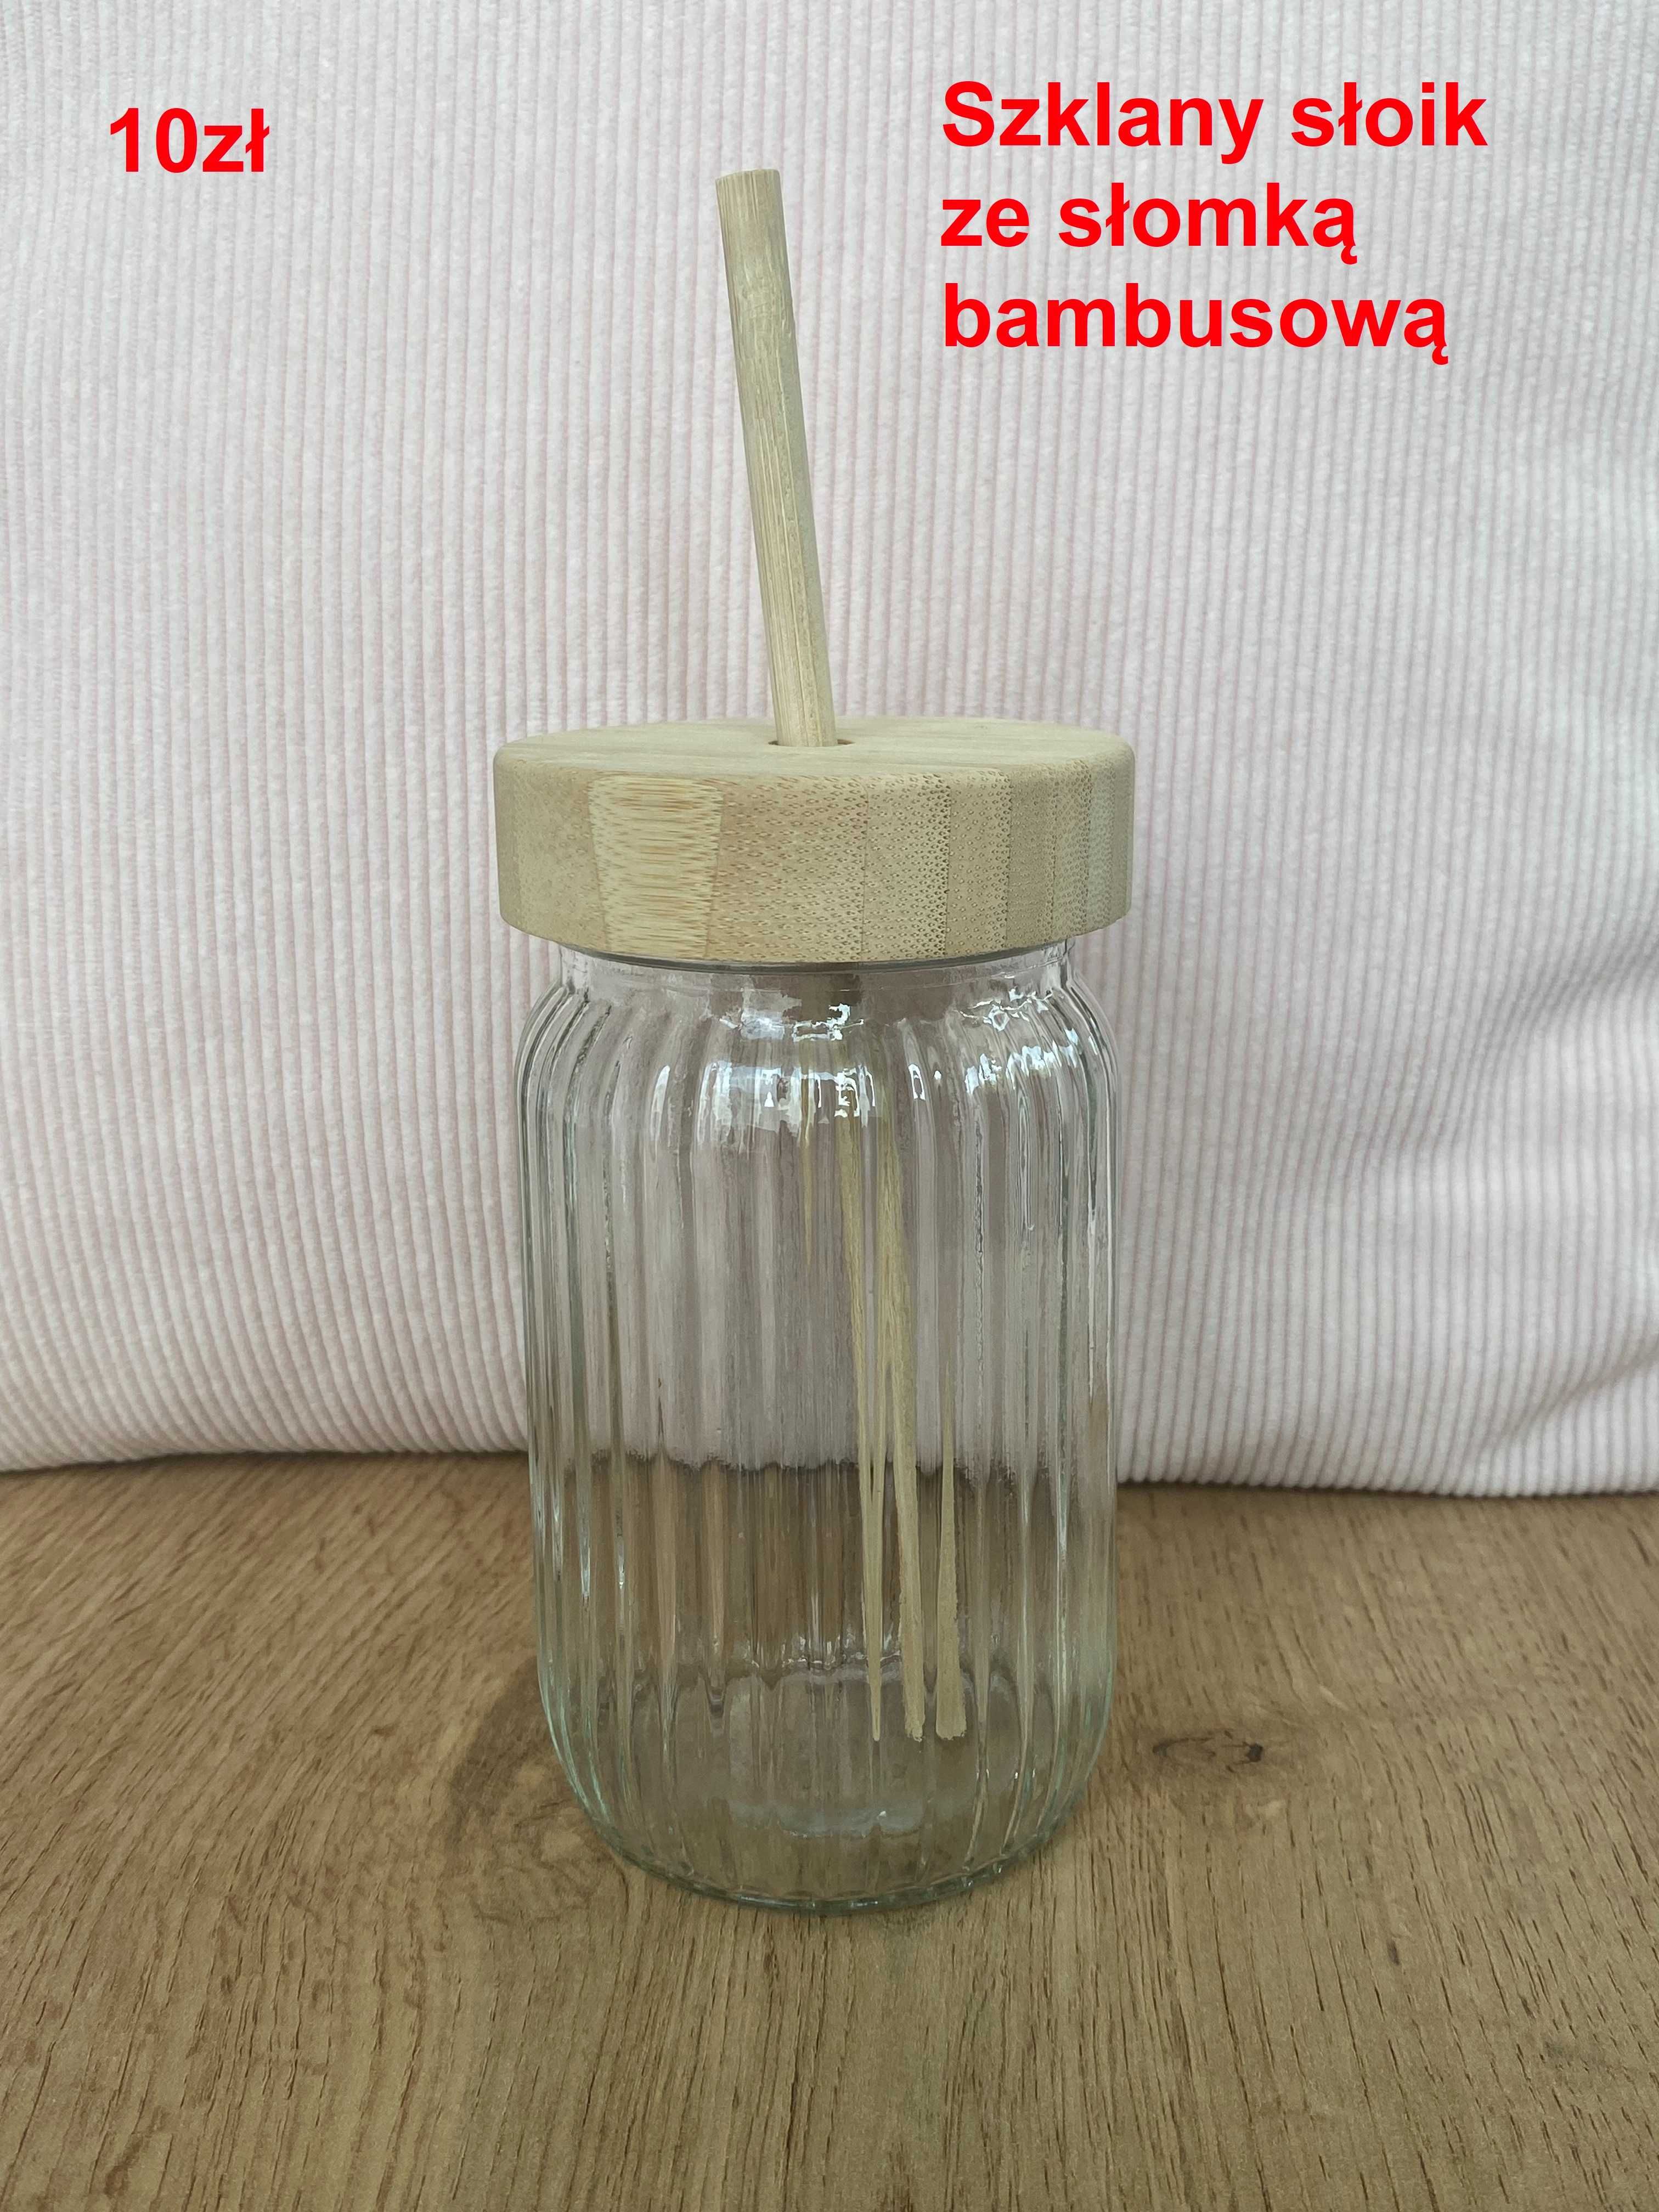 Szklany słoik z bambusową słomką